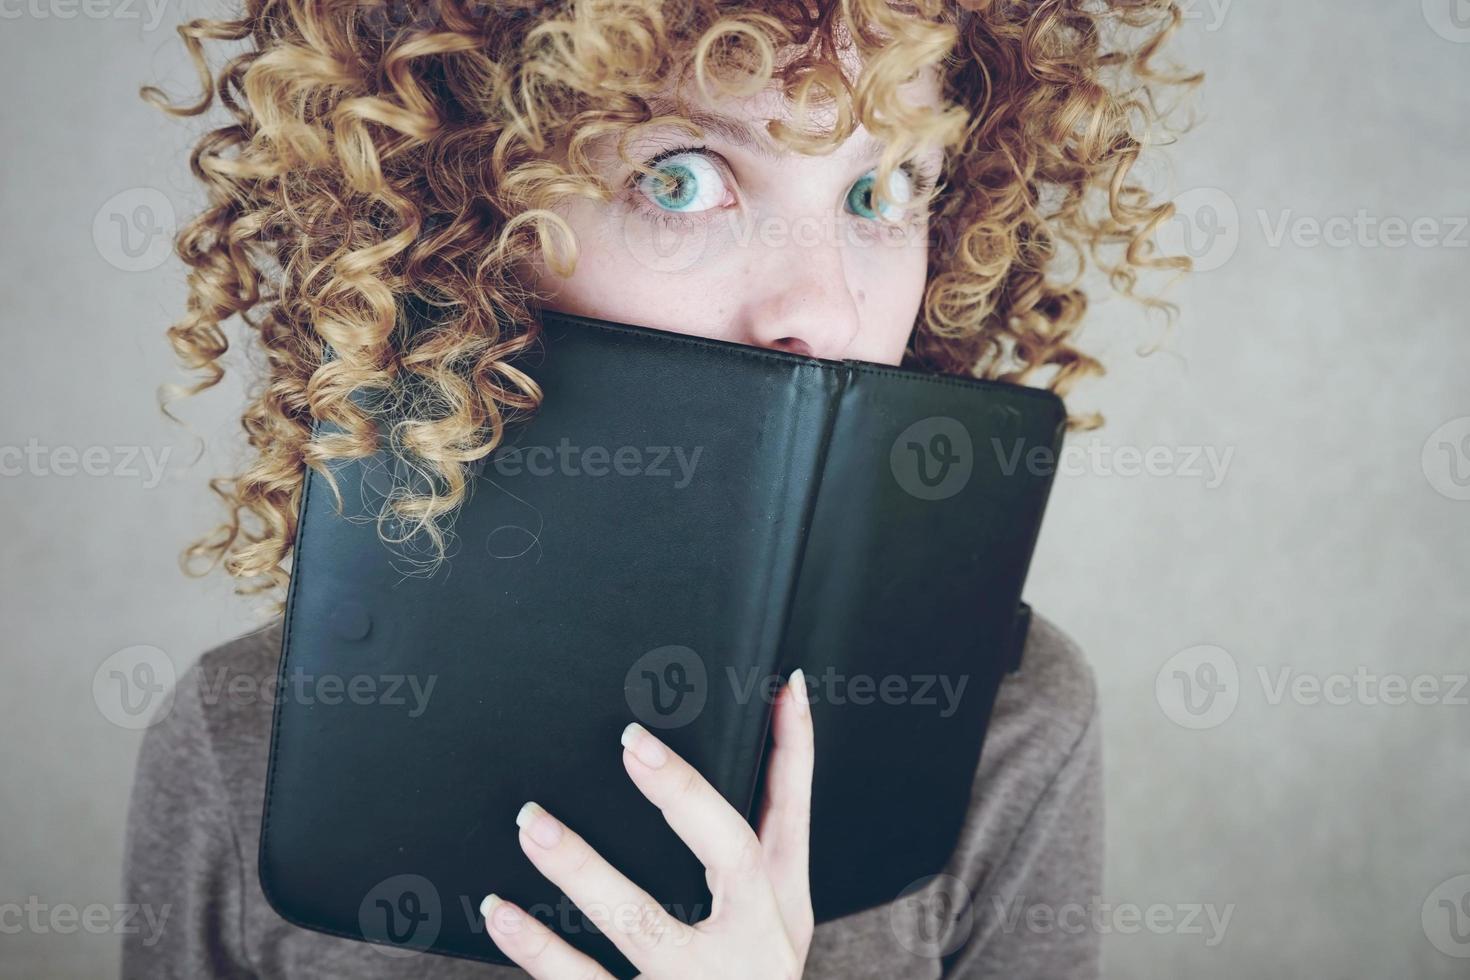 primo piano ritratto di una bella e giovane donna divertente con gli occhi azzurri e capelli biondi ricci dietro un'agenda o un ebook e lei è sorpresa foto